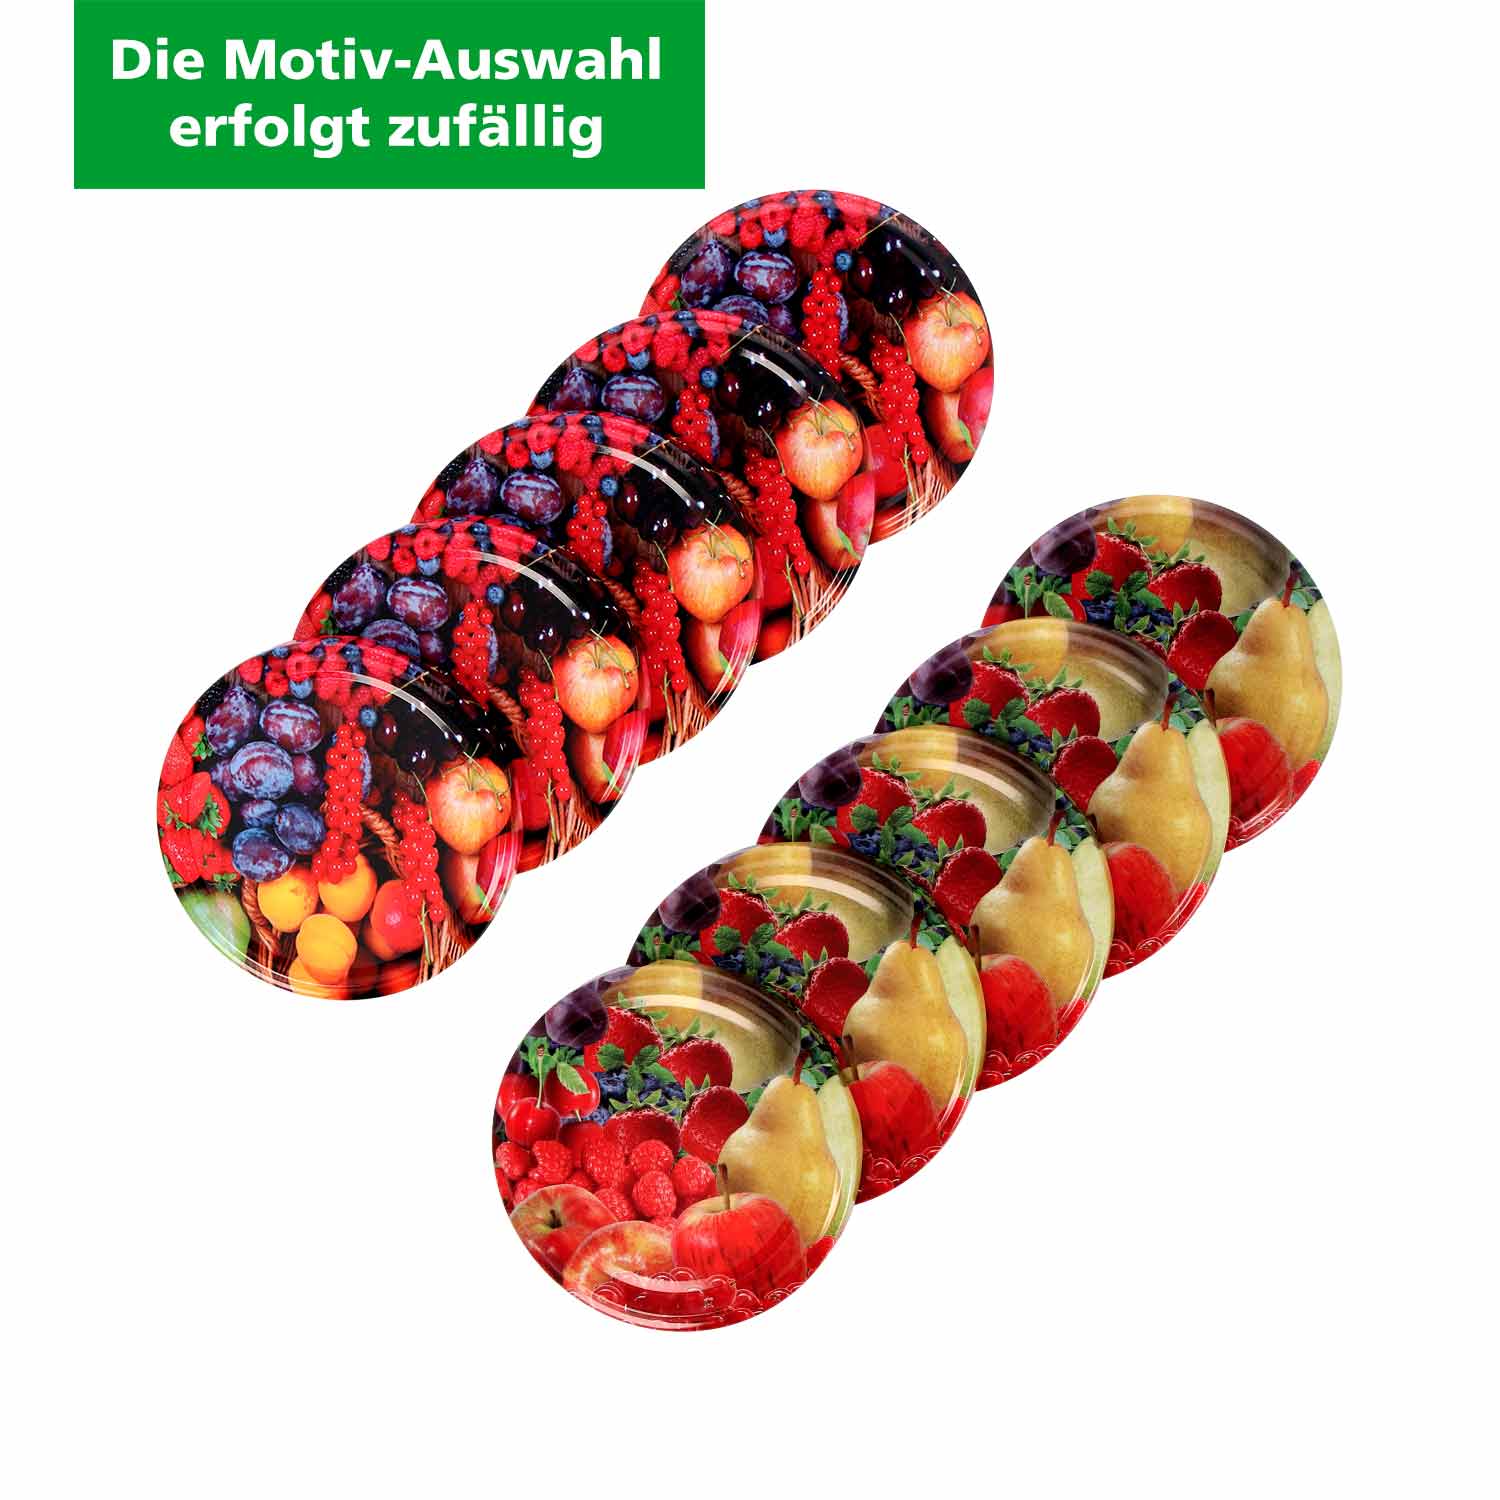 Schraubdeckel für Einmachgläser, 66 mm Früchte-Design (Motivauswahl erfolgt zufällig)